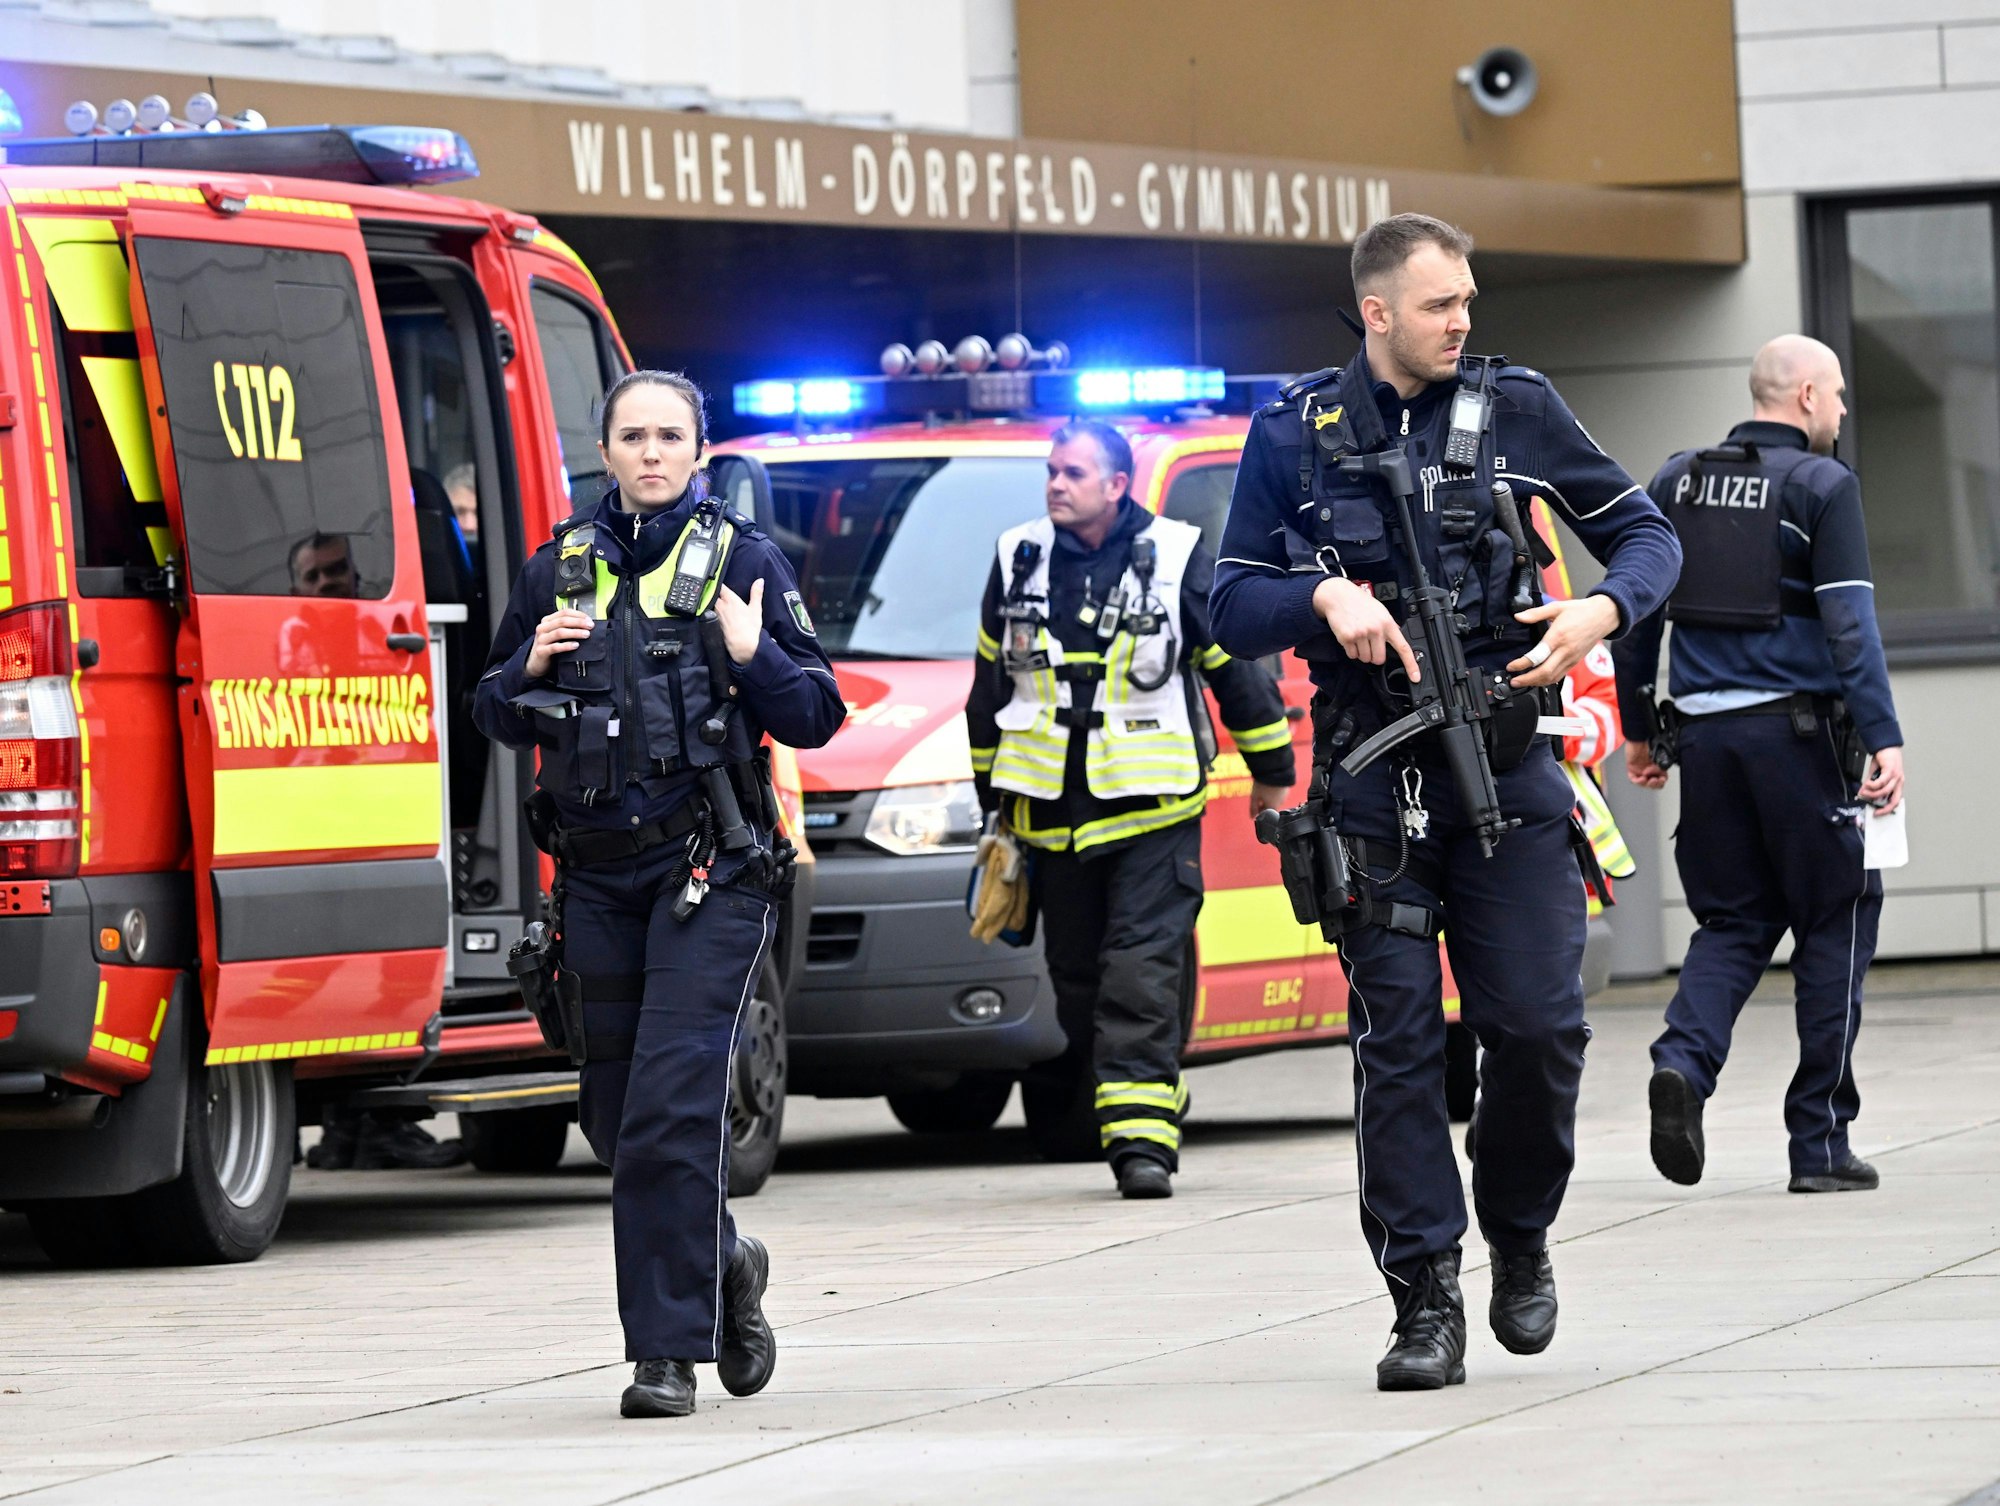 Polizei und Rettungswagen sind am Wilhelm-Dörpfeld-Gymnasium im Einsatz. In Wuppertal sind an einer Schule mehrere Schüler verletzt worden. Ein Verdächtiger sei festgenommen worden, sagte ein Polizeisprecher in Düsseldorf. Die Polizei sei mit starken Kräften vor Ort.